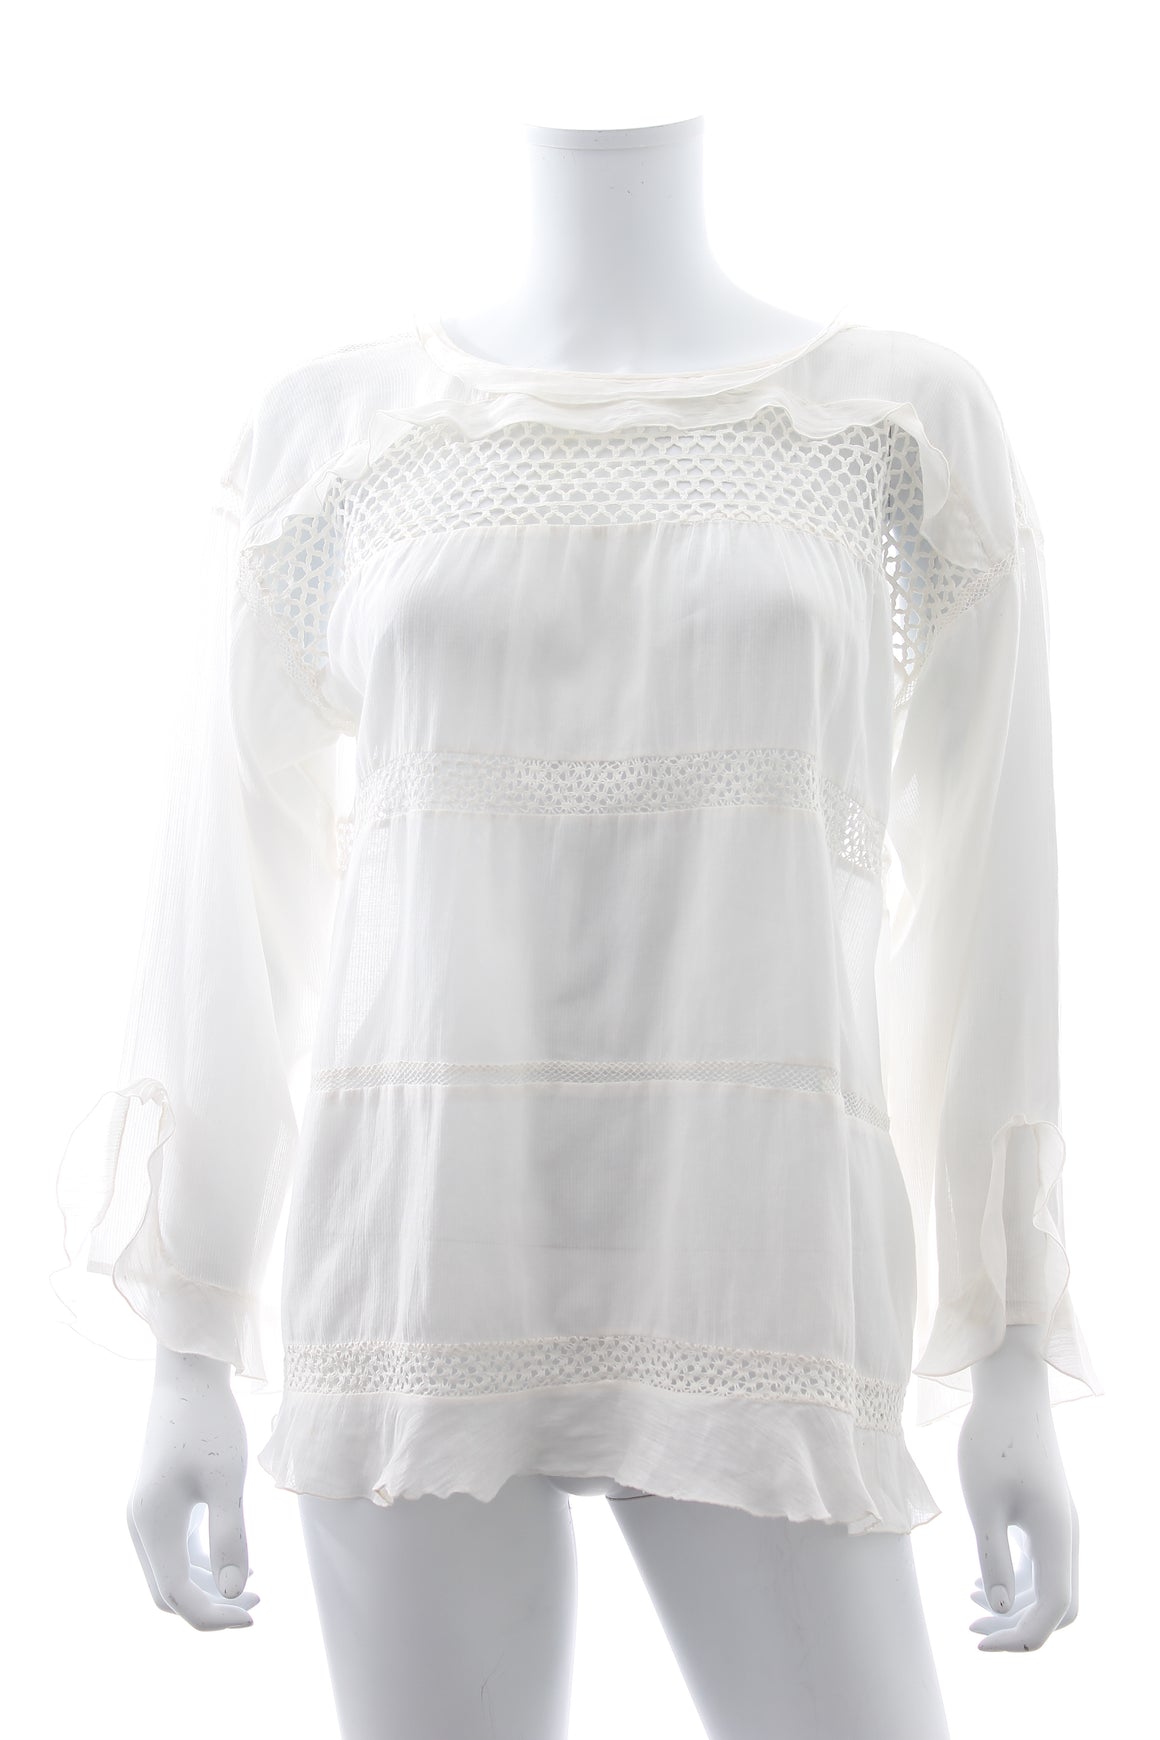 Isabel Marant Etoile 'Cadix' Crochet-Panelled Cotton-Blend Top